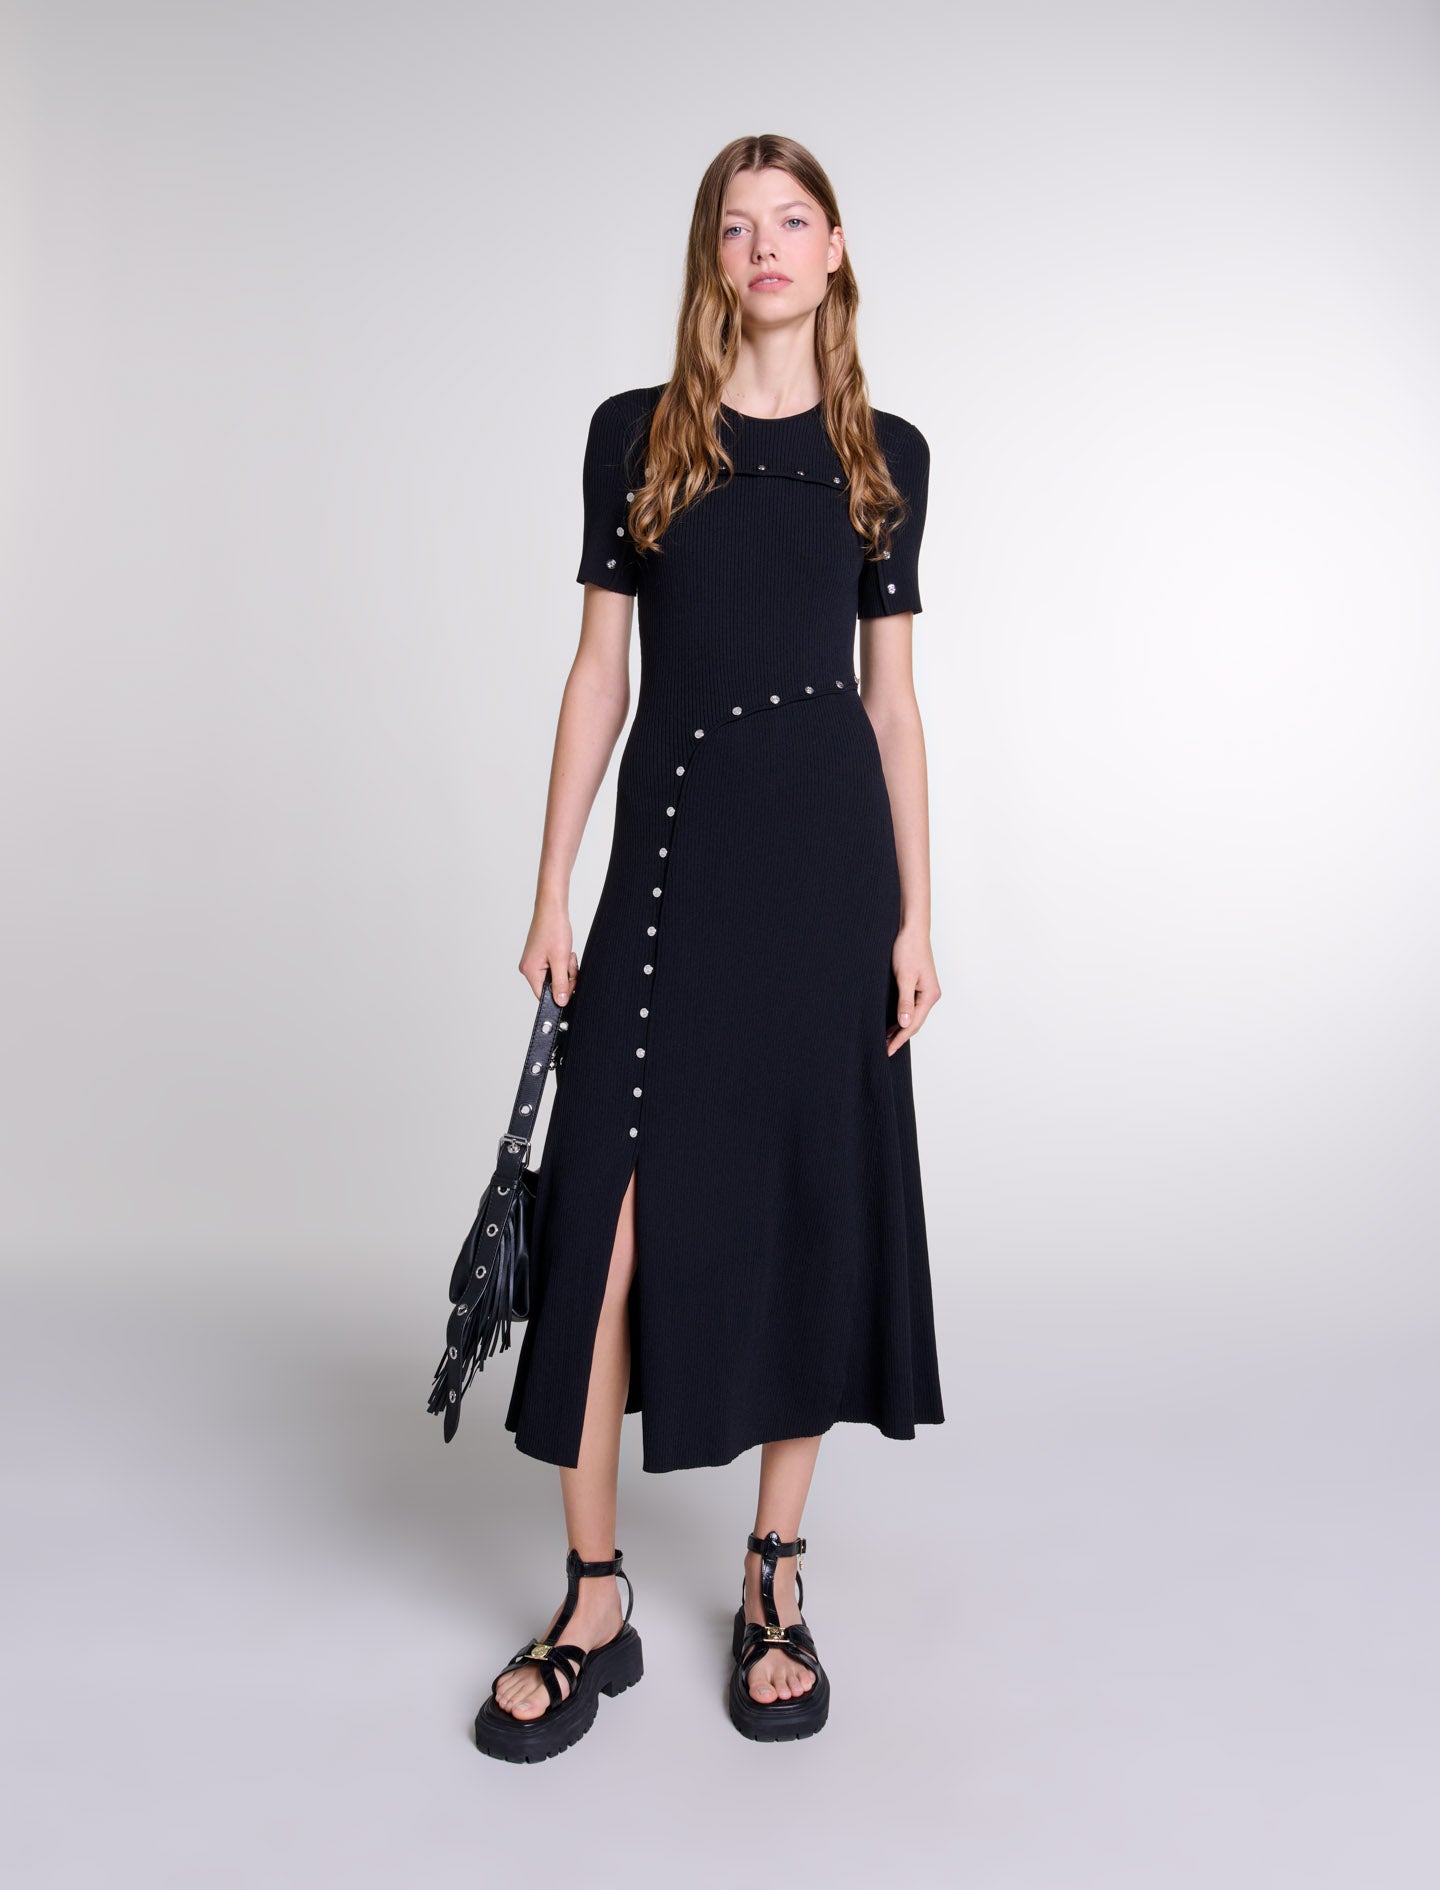 Black featured Knit maxi dress